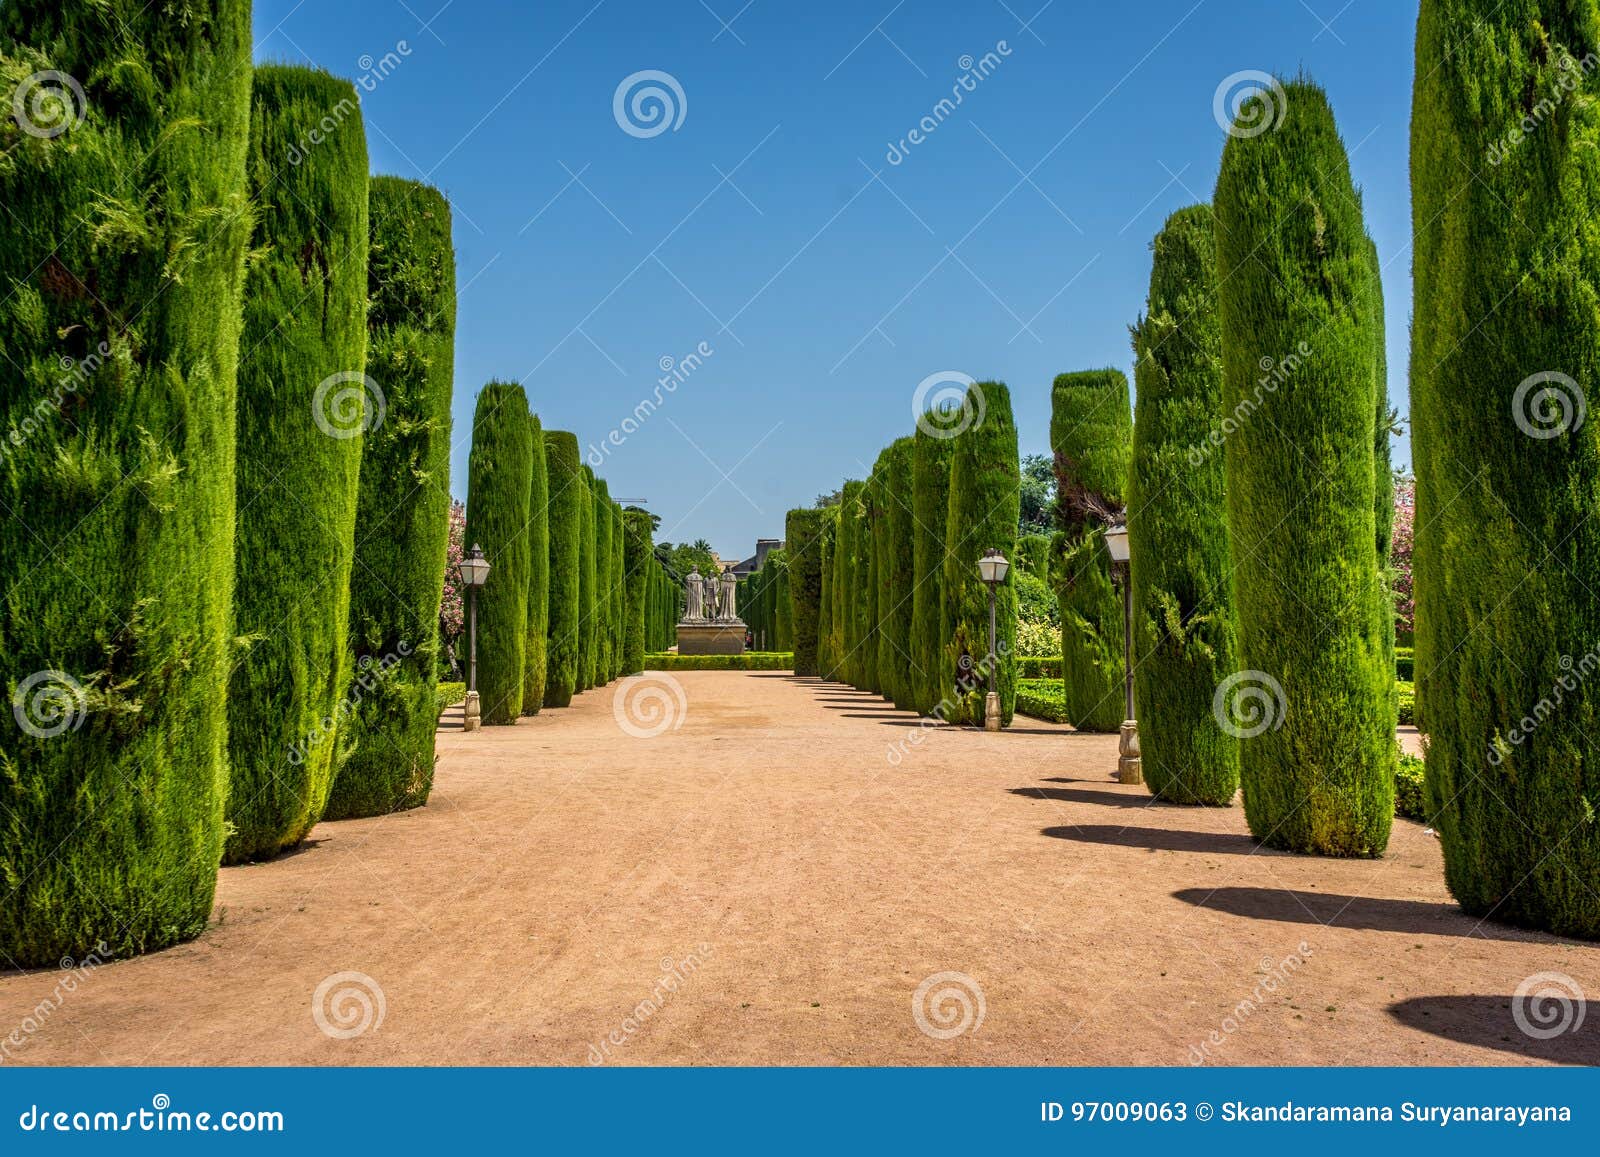 tall trees in the jardines, royal garden of the alcazar de los r